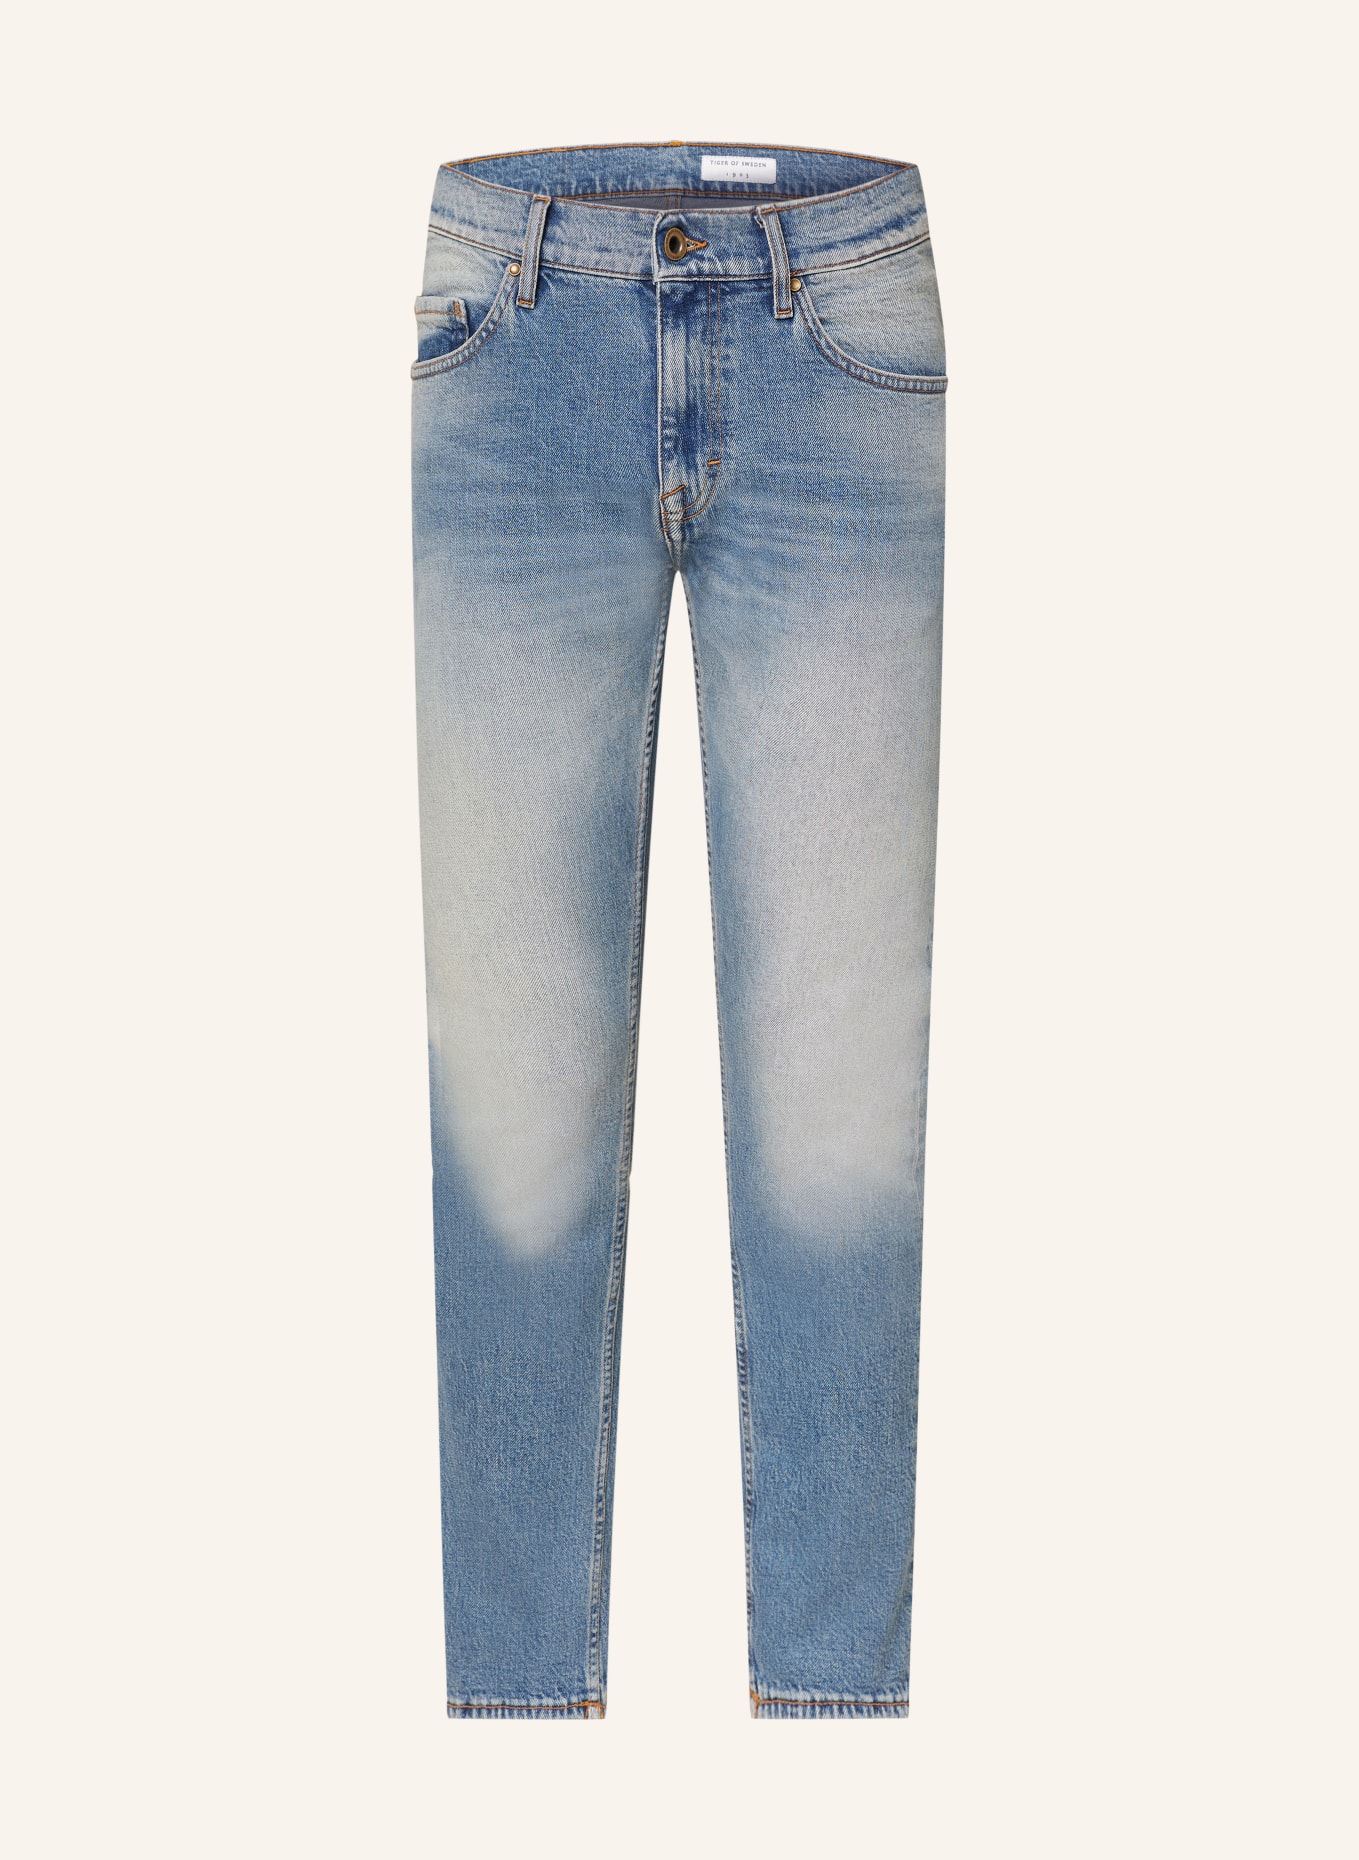 TIGER OF SWEDEN Jeans PISTOLERO slim fit, Color: 200 Light blue (Image 1)